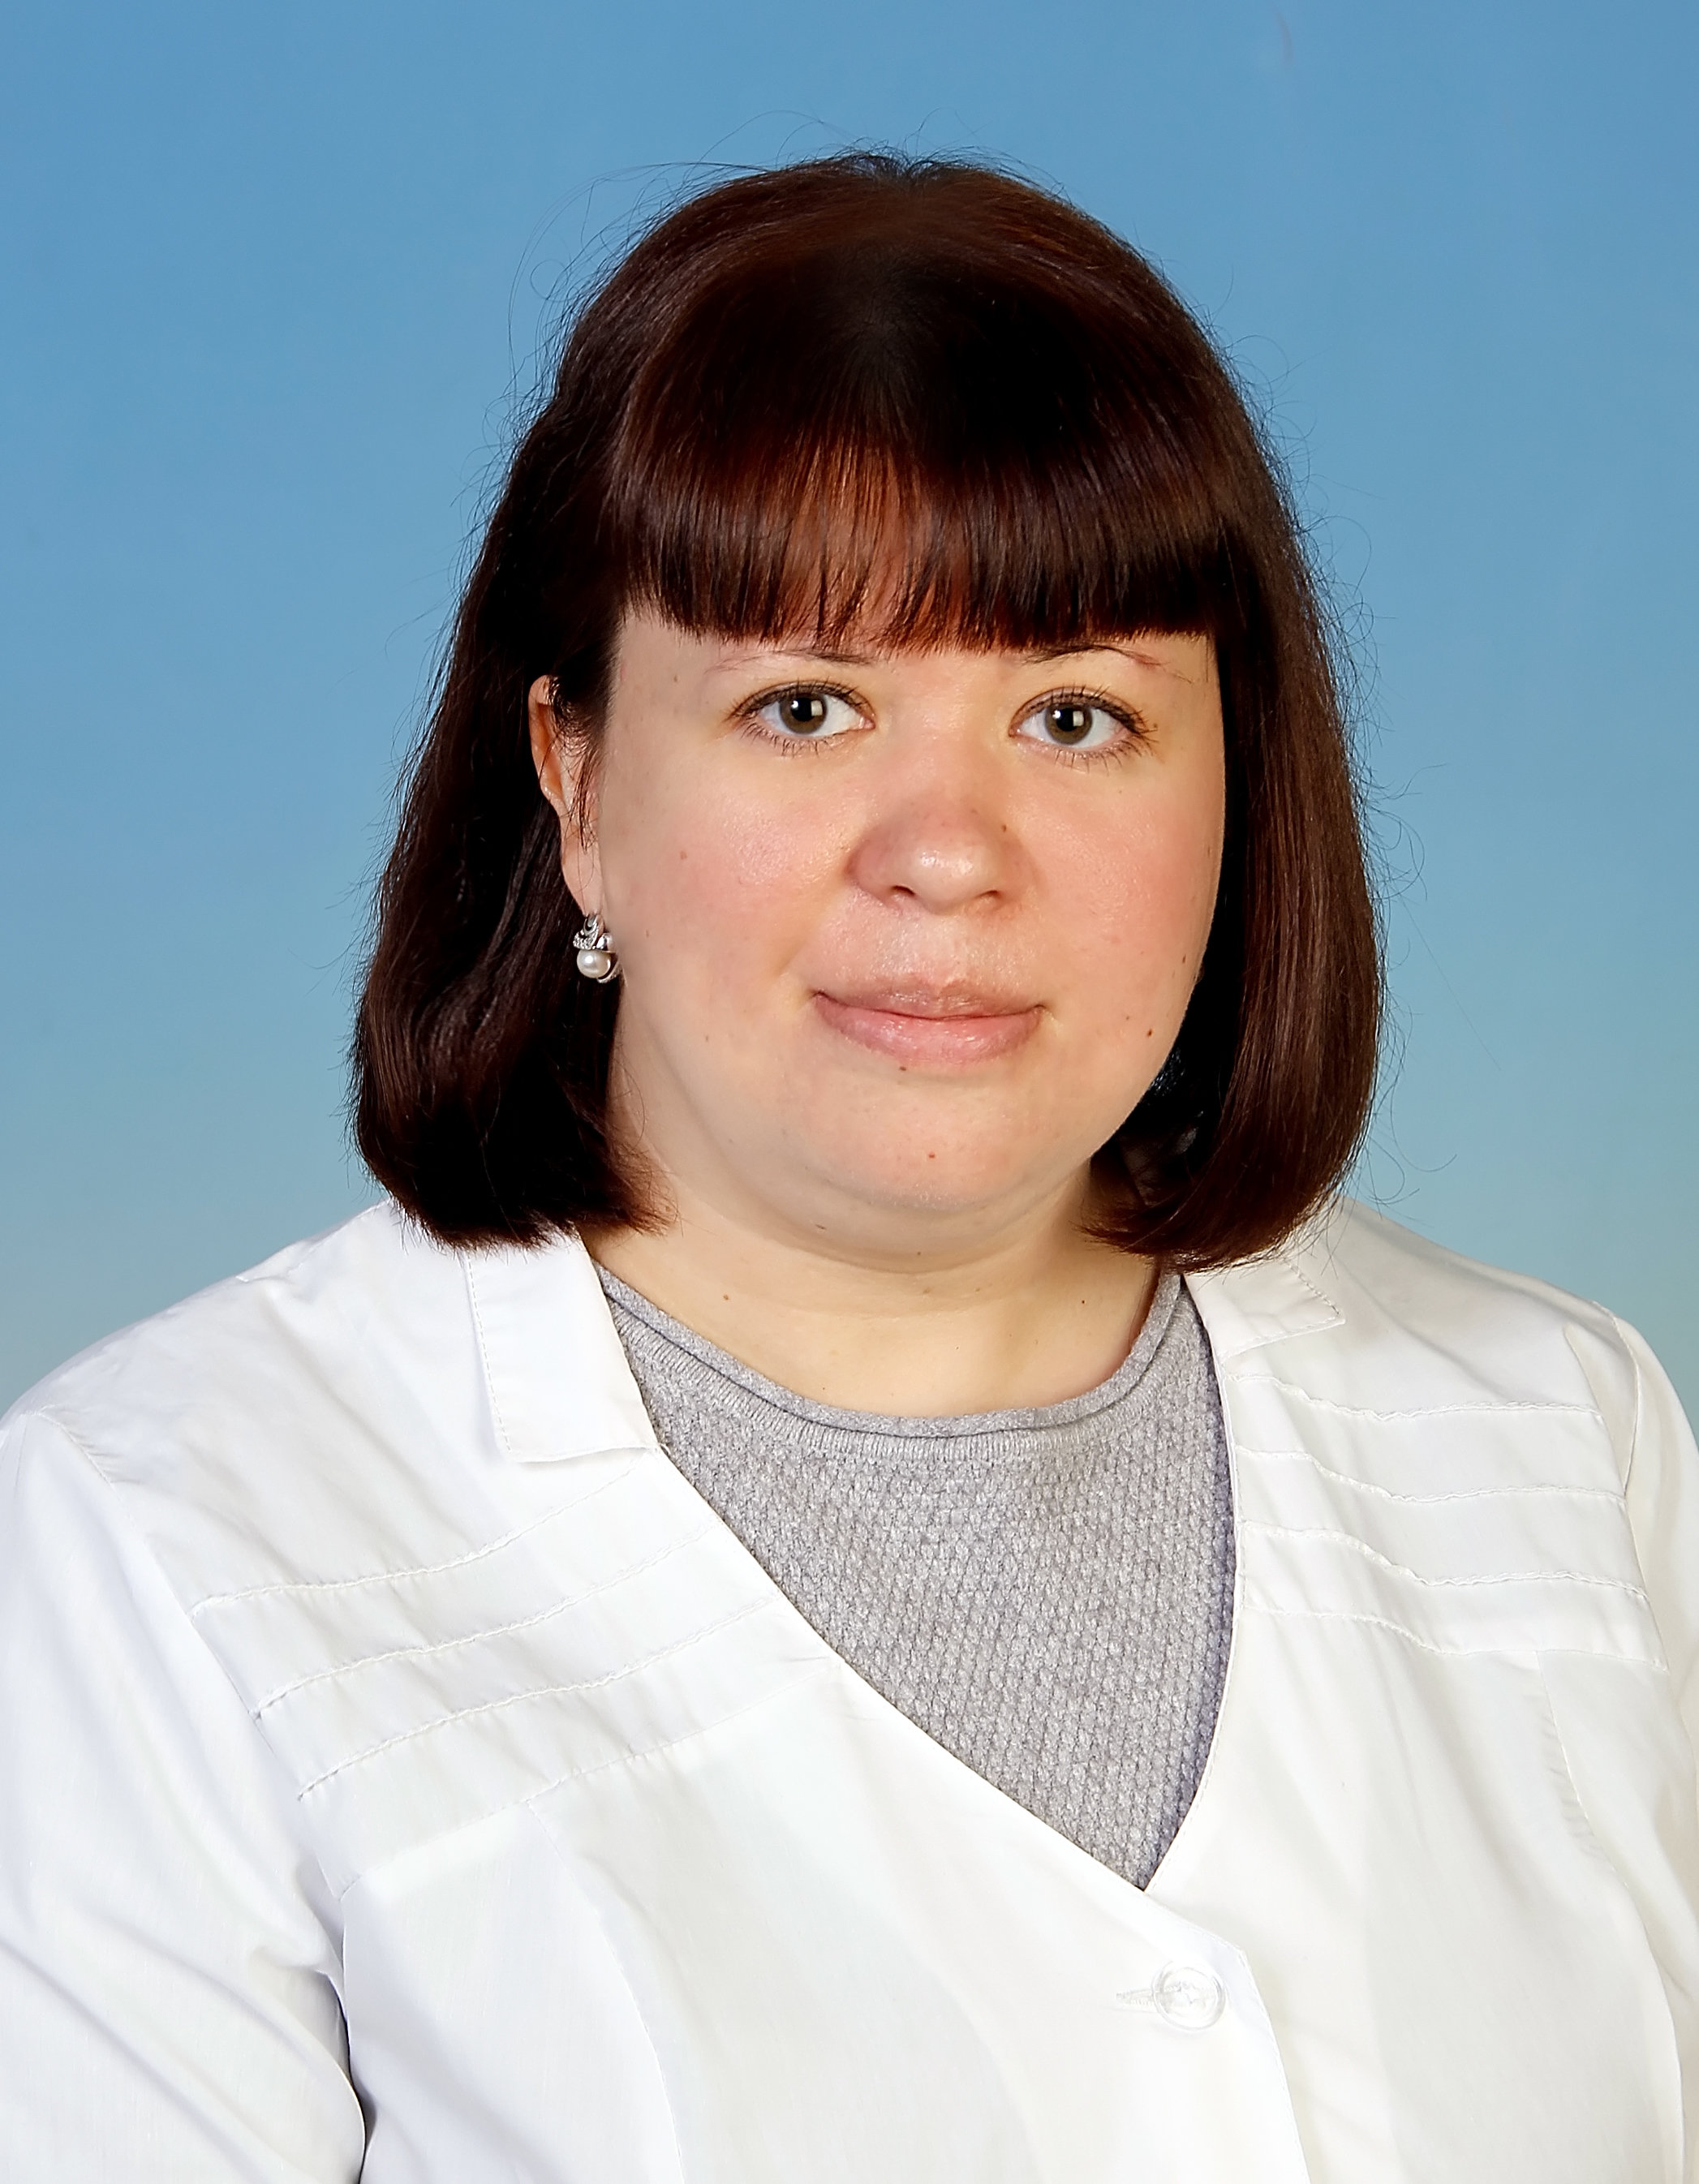 Невропатолог тула. Л-мед Тула врач Капралова.